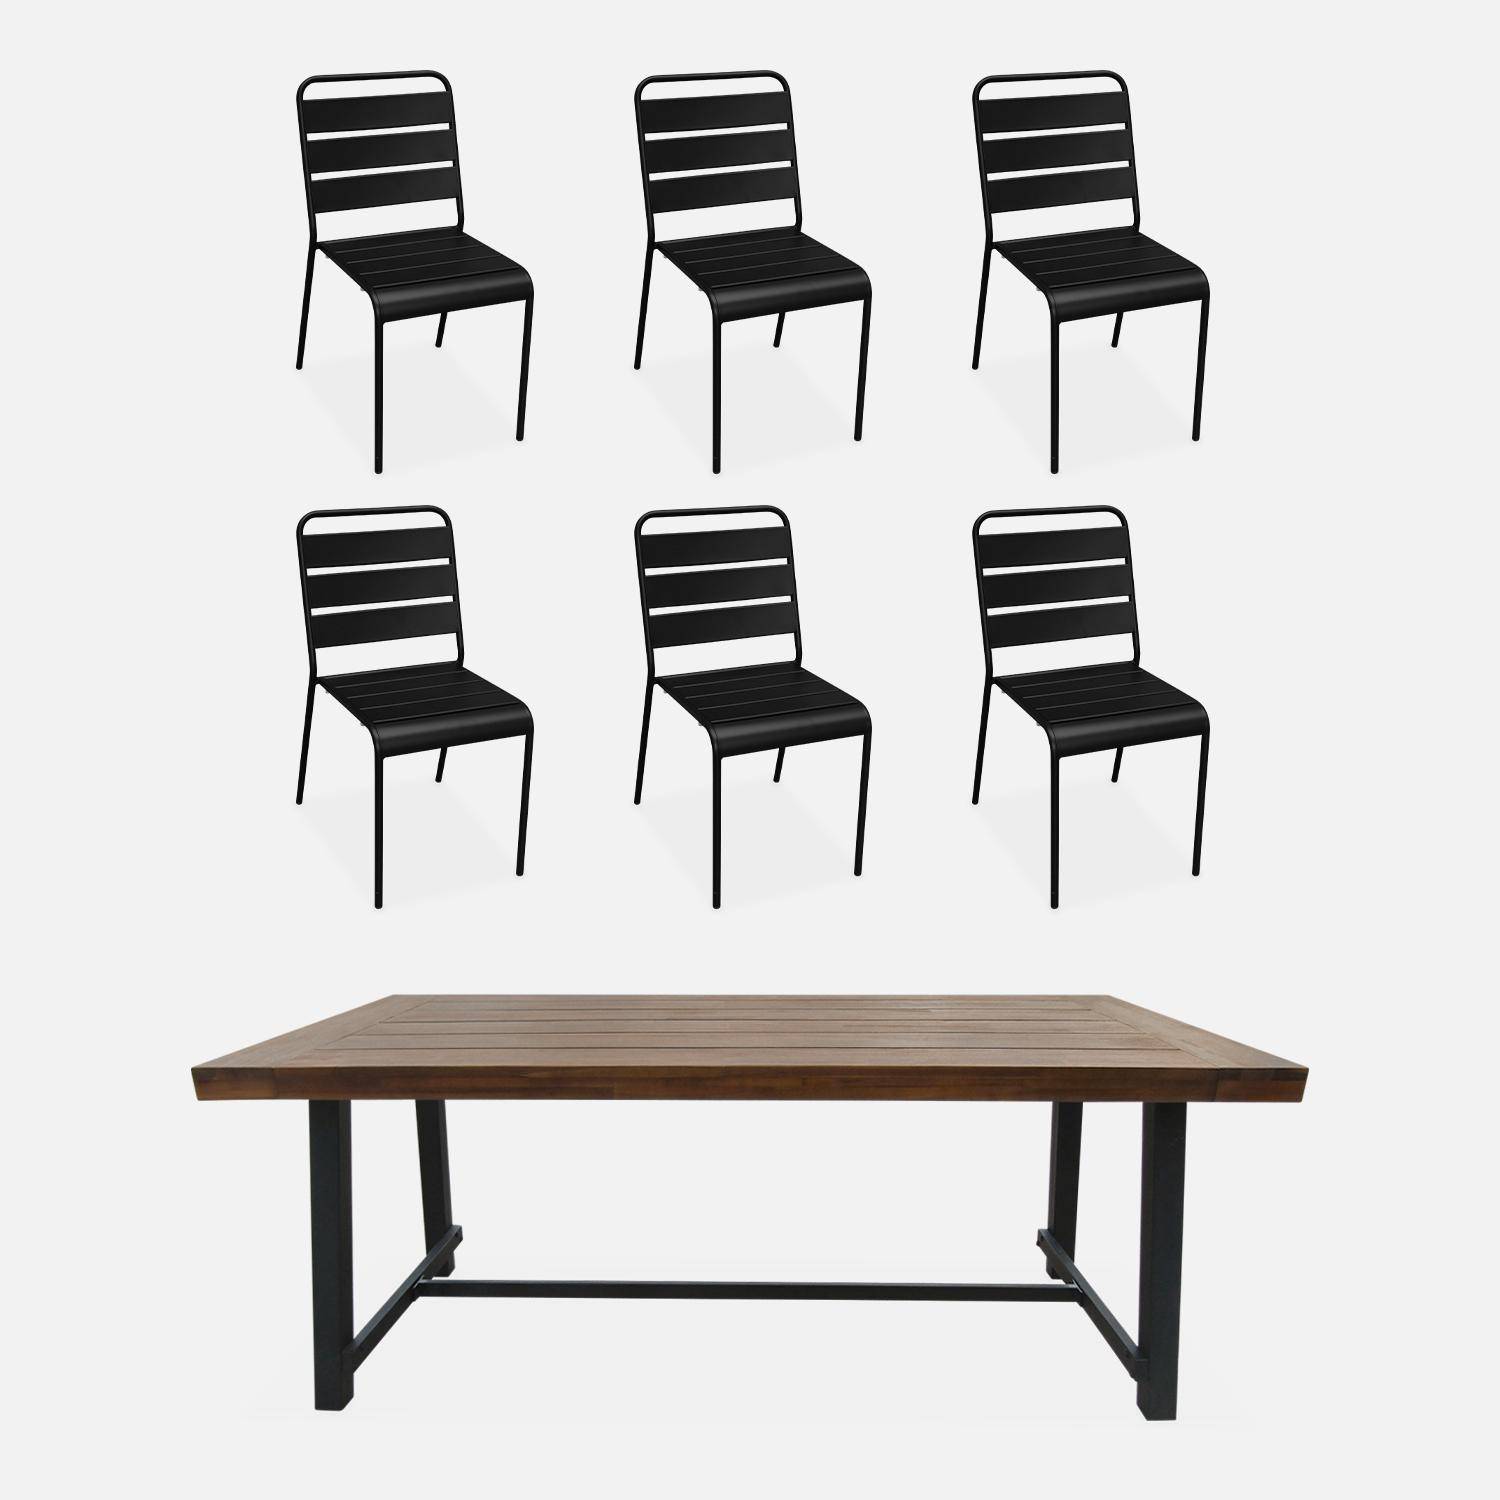 Table intérieur / extérieur bois et métal, 190cm + 6 chaises en métal empilables Photo1